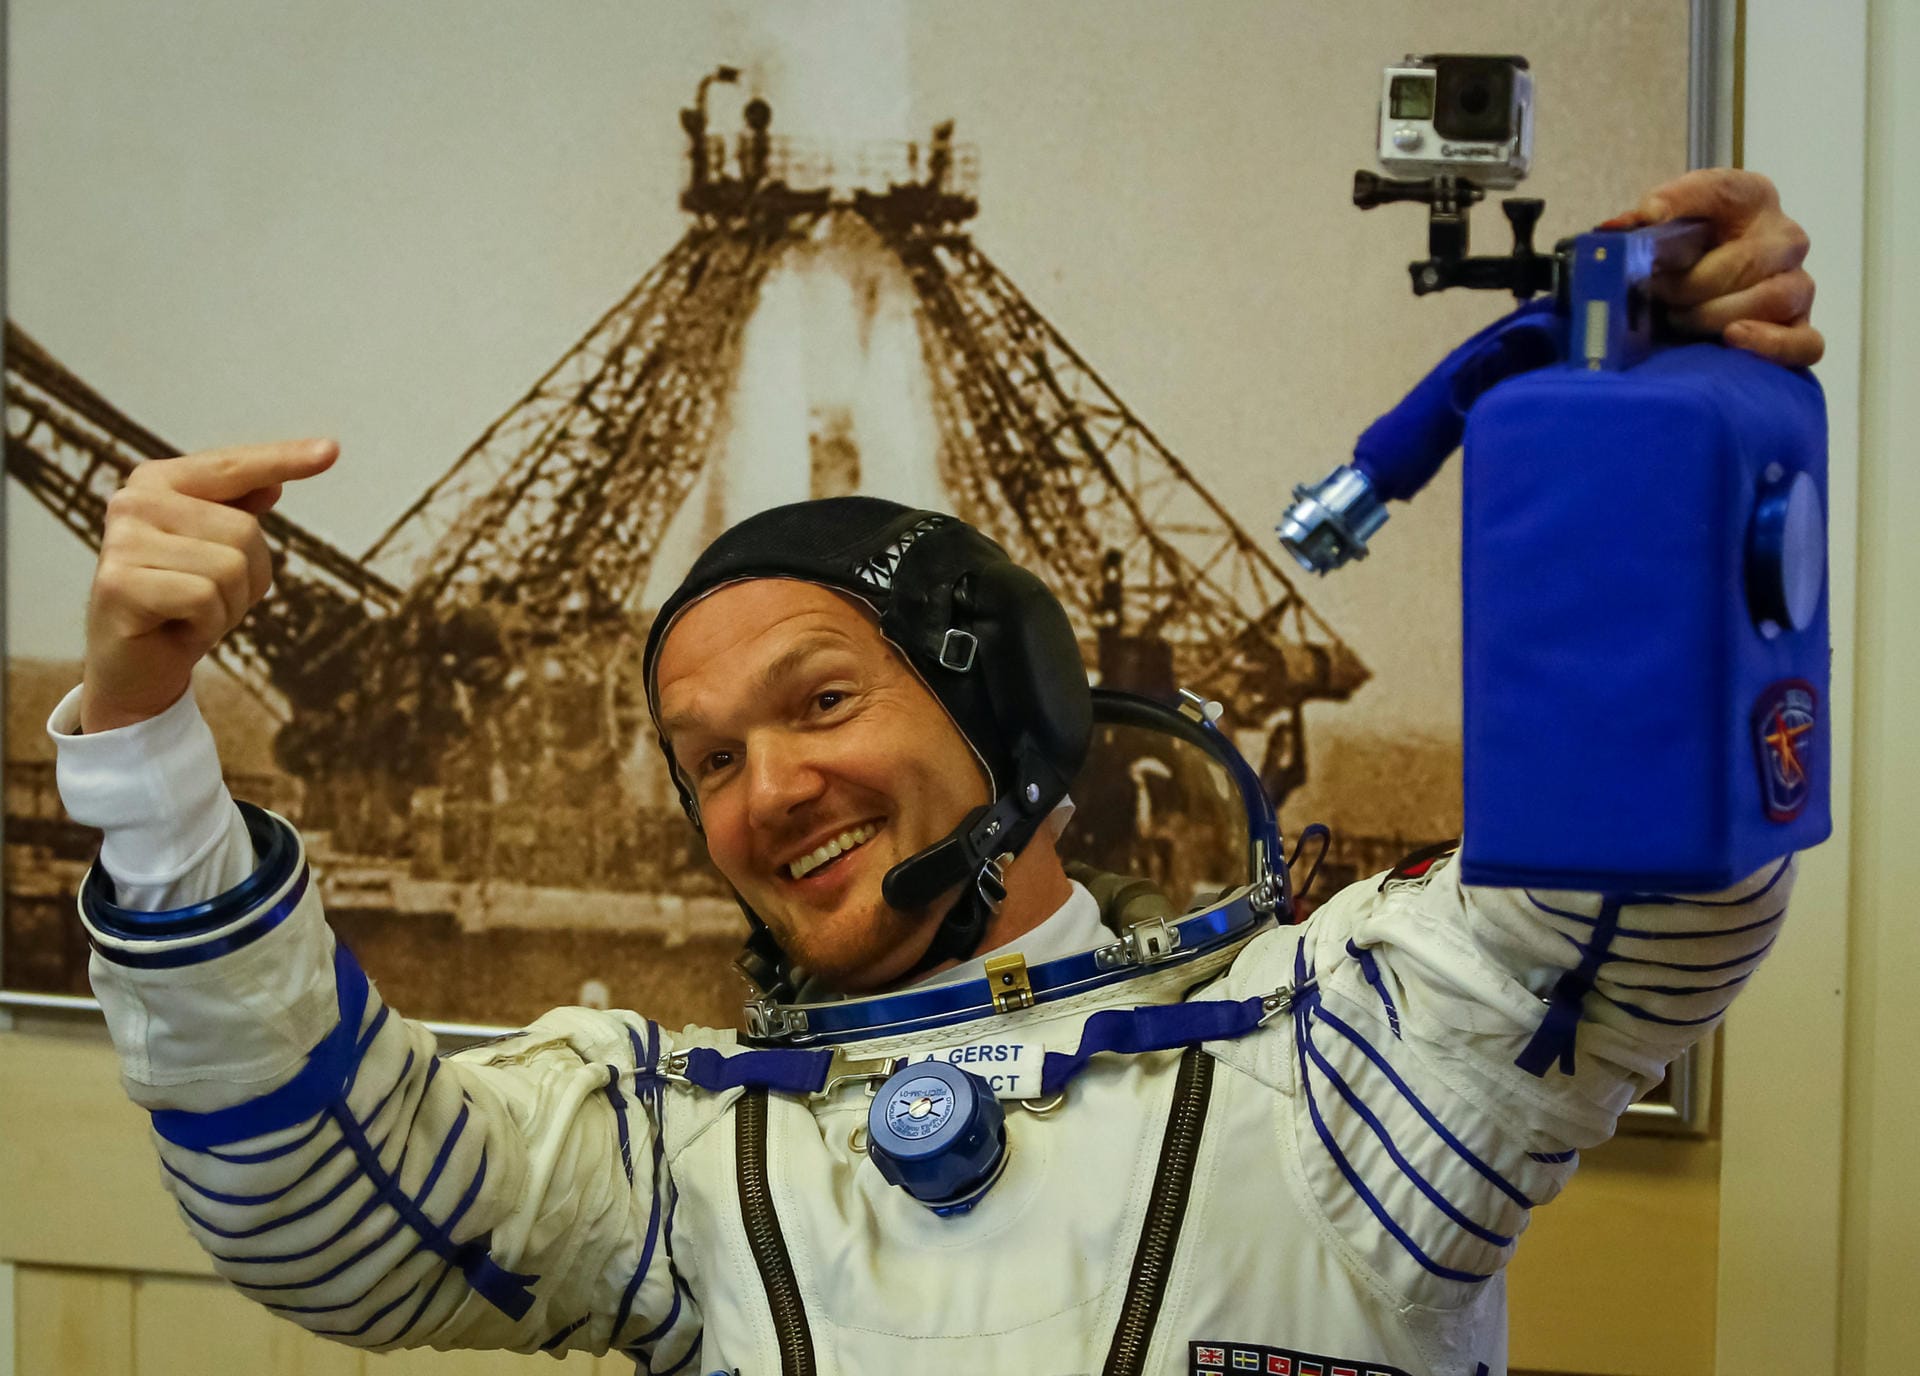 Auch im sperrigen Raumanzug hat "Astro-Alex" noch gute Laune. Der blaue Kanister ist seine Mini-Klimaanlage für den Raumanzug. Oben drauf hat Alexander Gerst eine GoPro-Kamera montiert – für Aufnahmen im Cockpit.